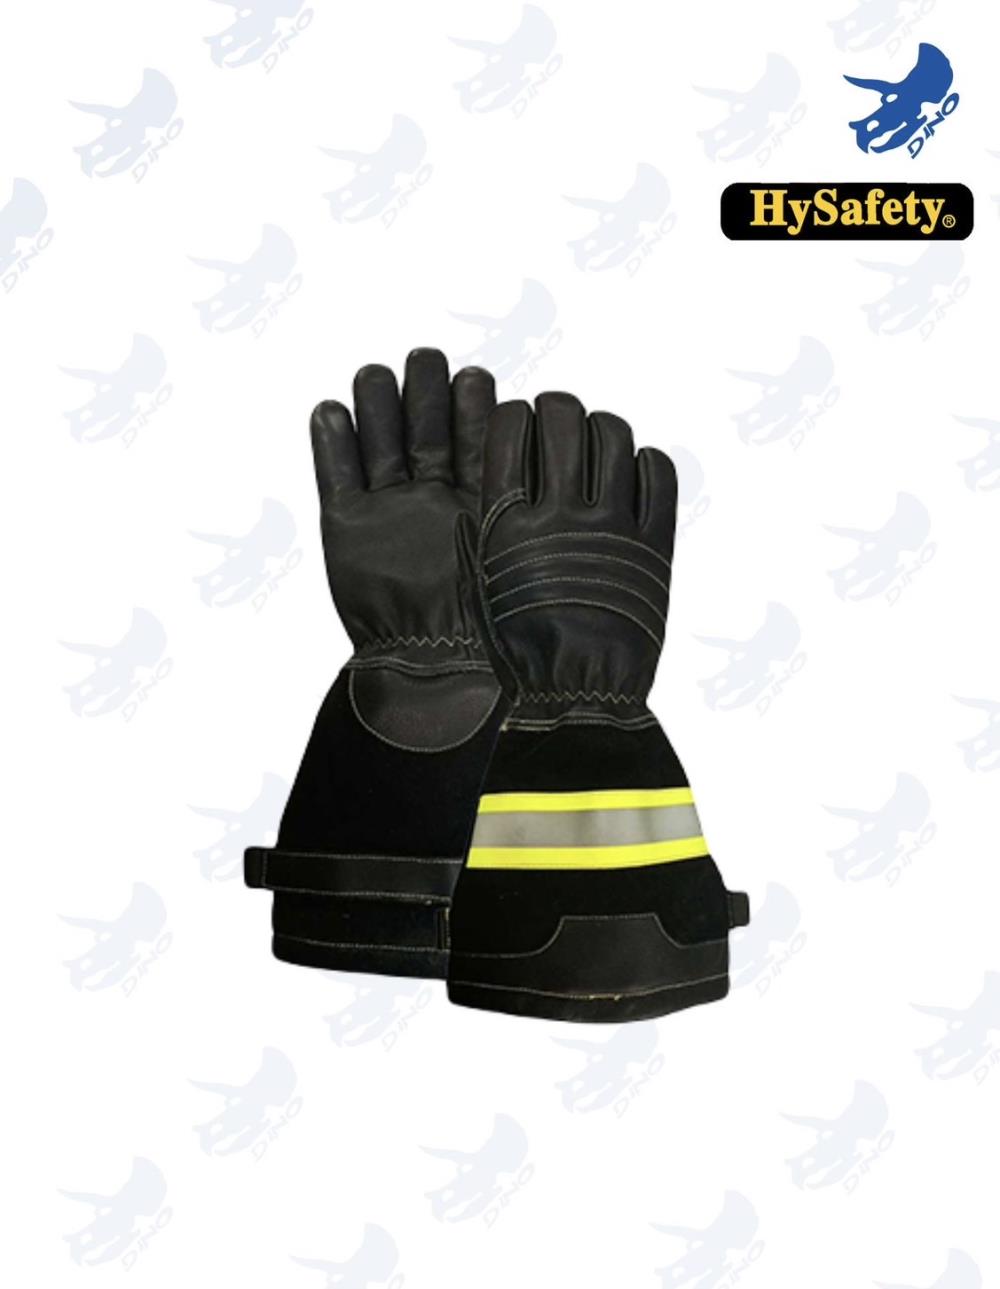 ถุงมือดับเพลิง,ถุงมือดับเพลิง,็HySafety,Plant and Facility Equipment/Safety Equipment/Fire Safety